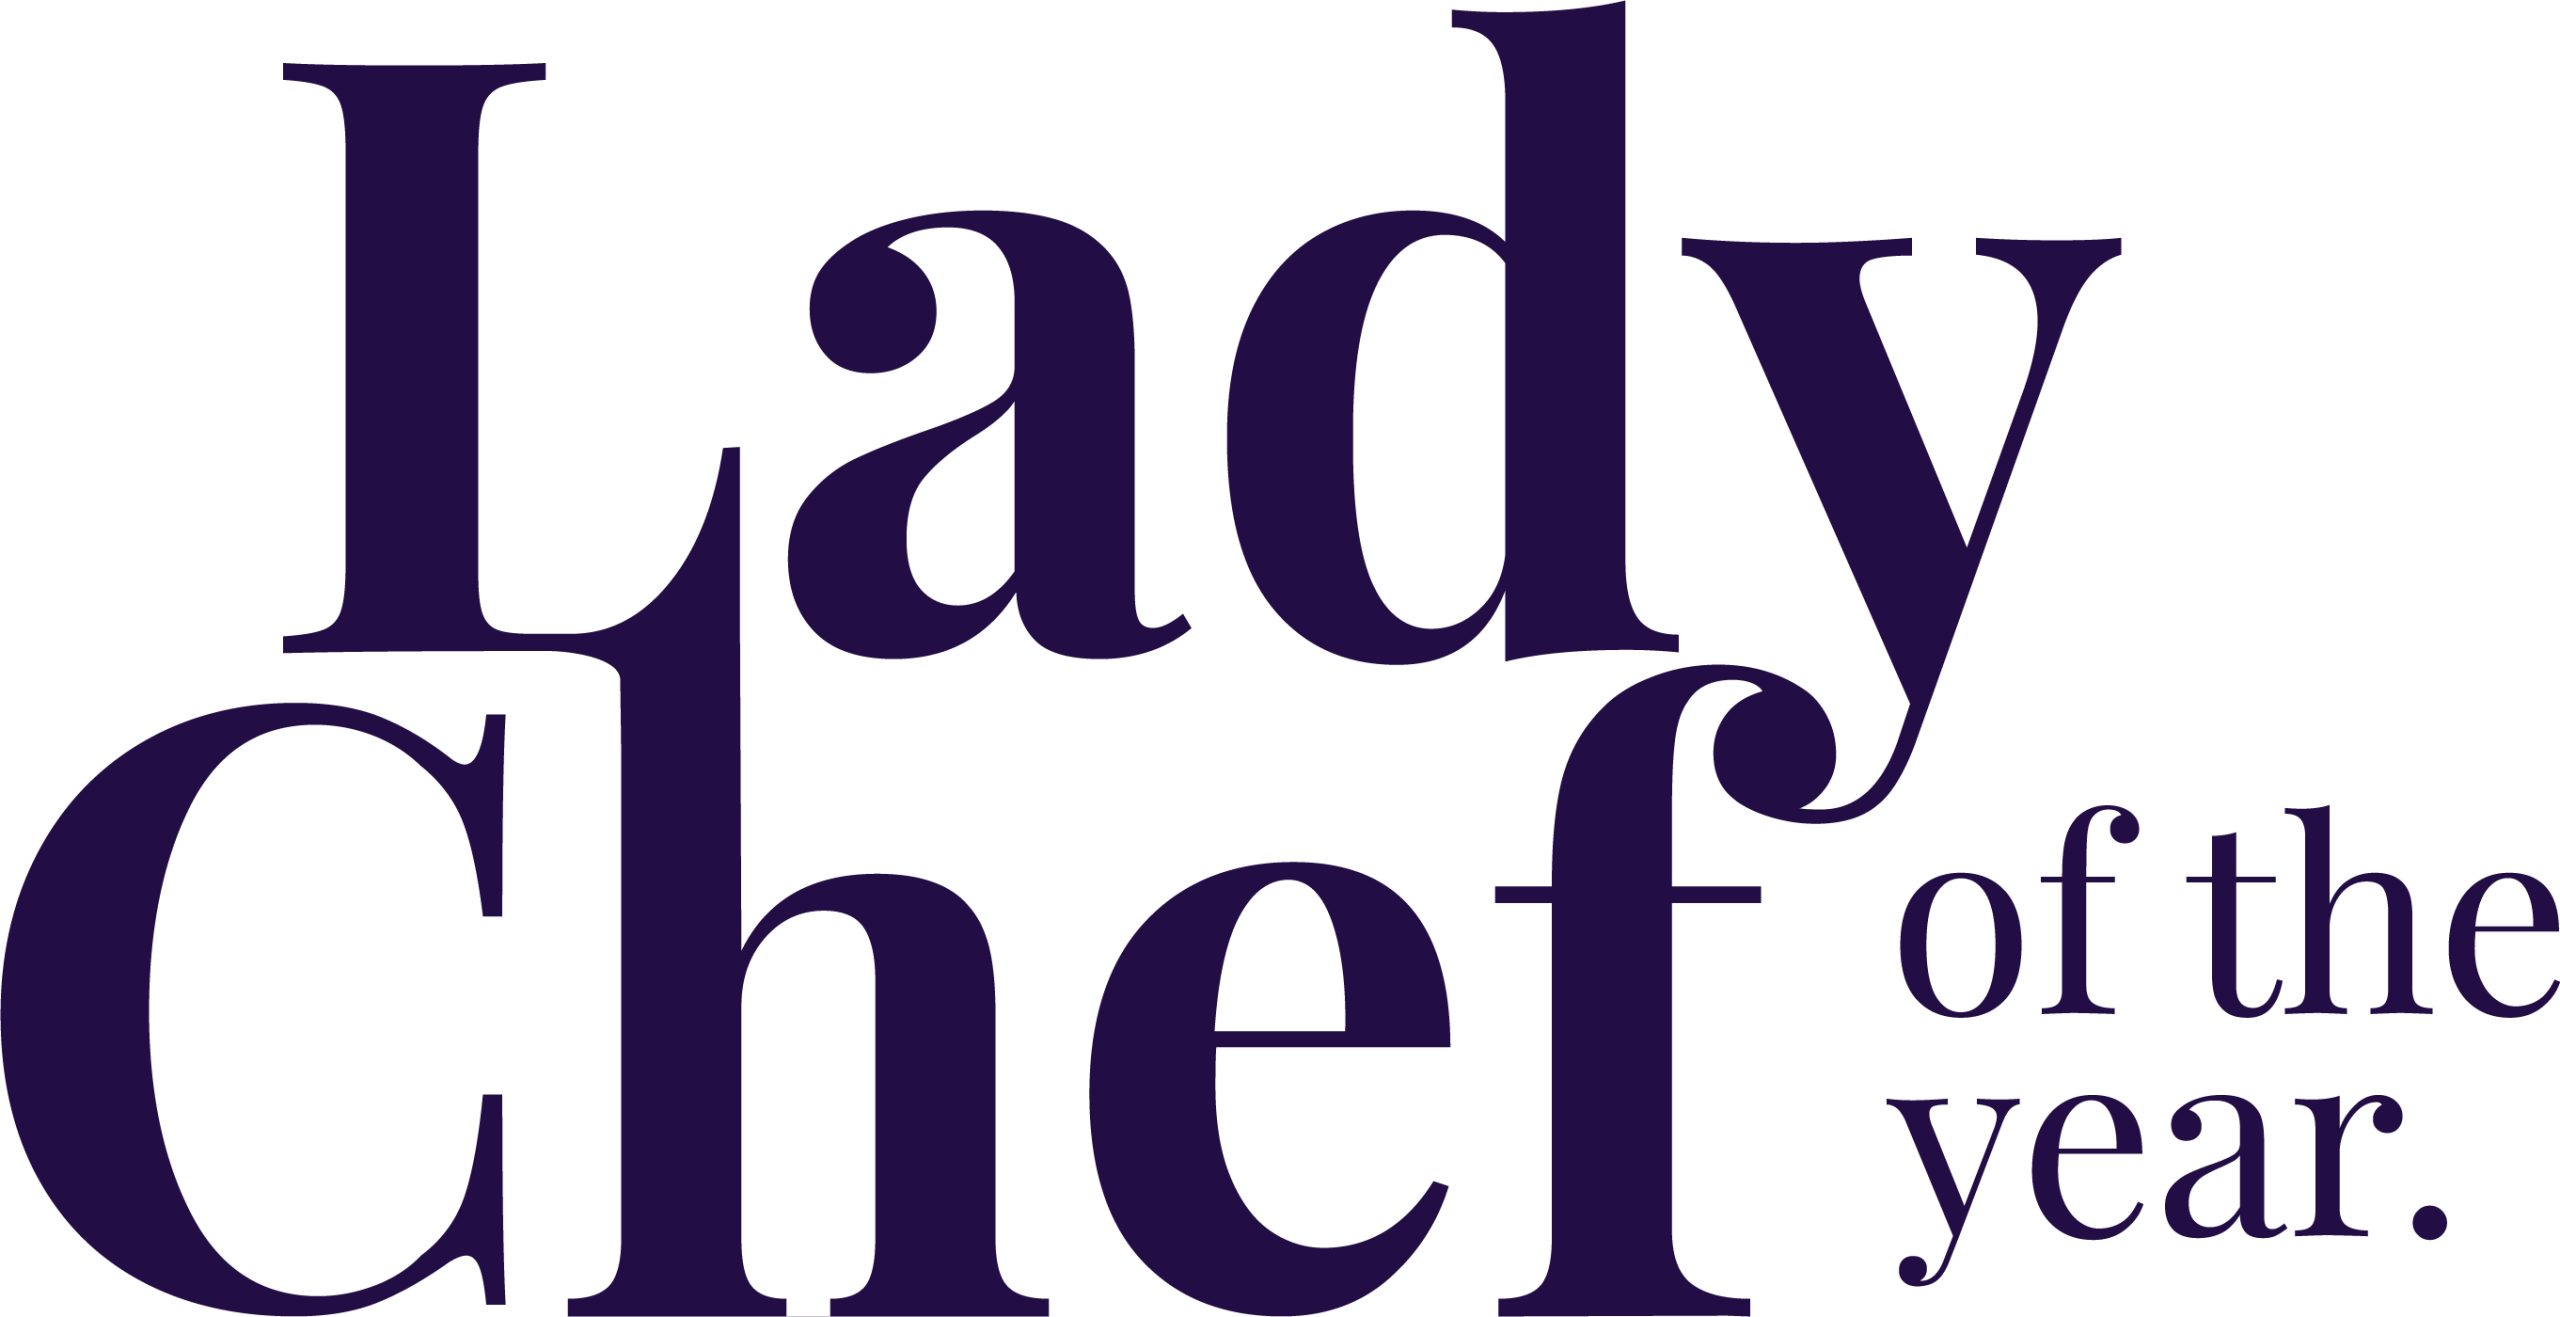 Lady chef logo